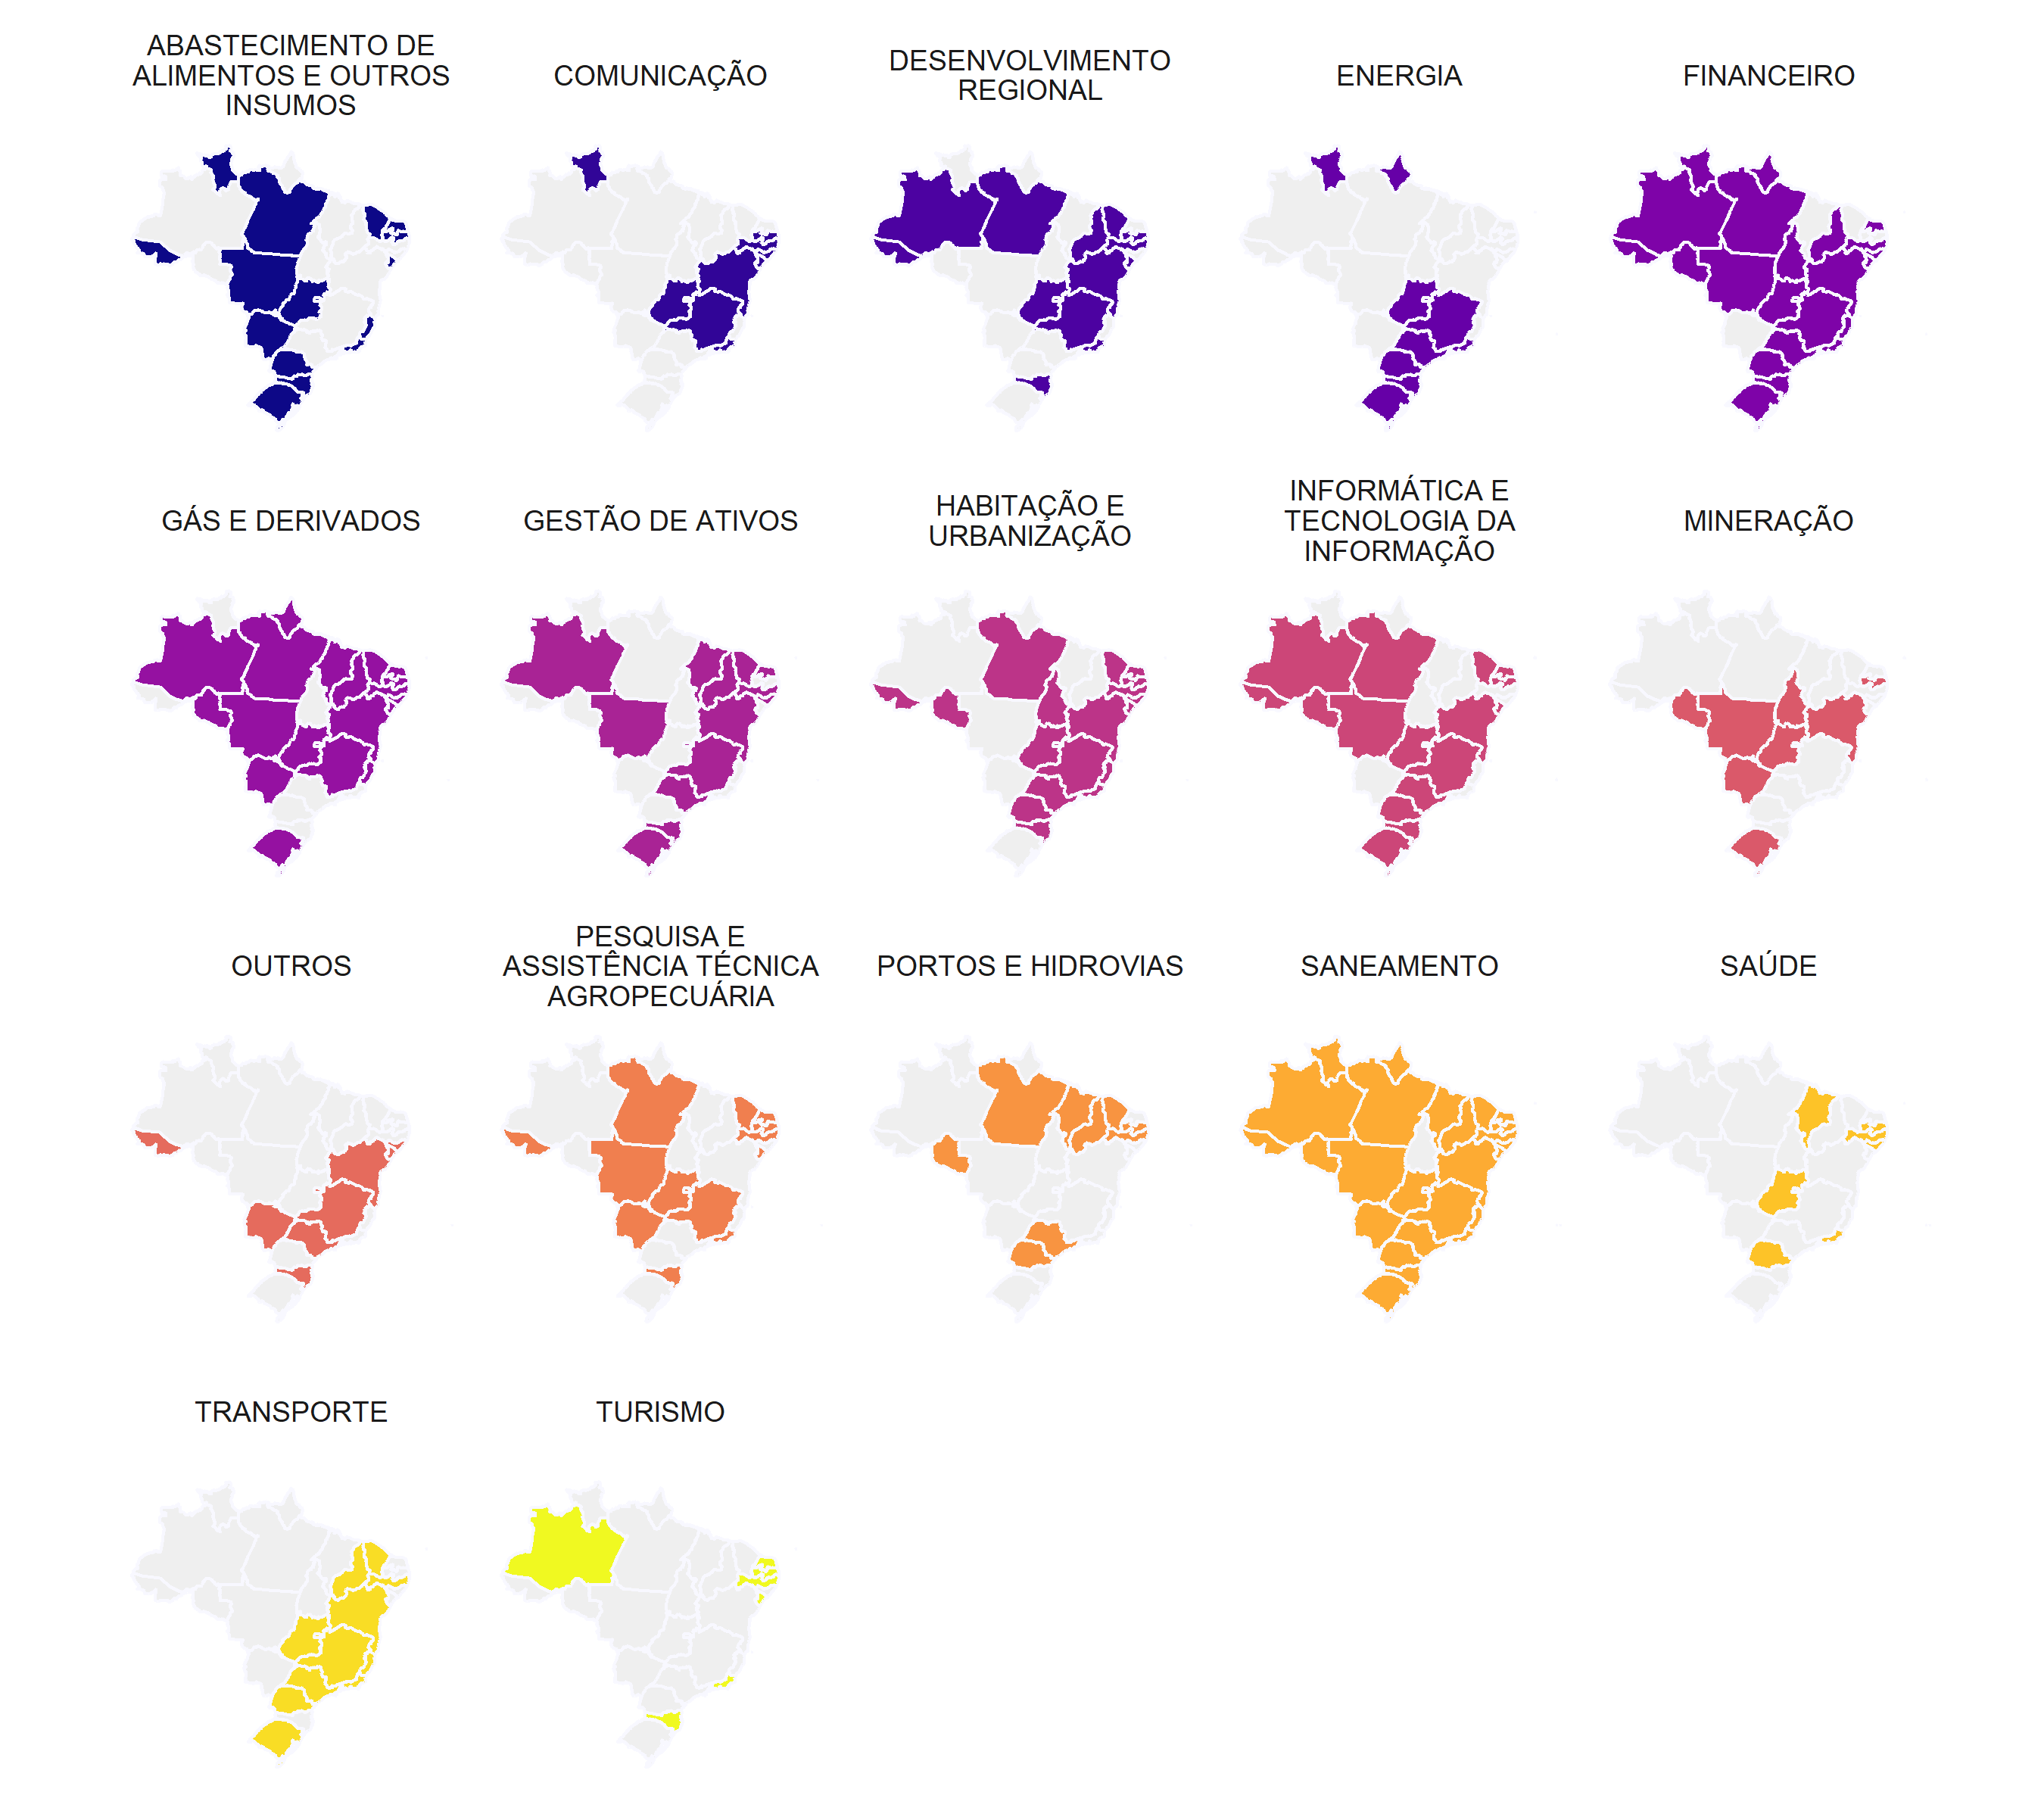 Visualização dos estados que possuem determinados tipos de empresas, por meio de vários pequenos mapas do Brasil, um para cada setor. Em cada mapinha, os estados que possuem empresas de determinado setor estão preenchidos com a cor que representa o setor.